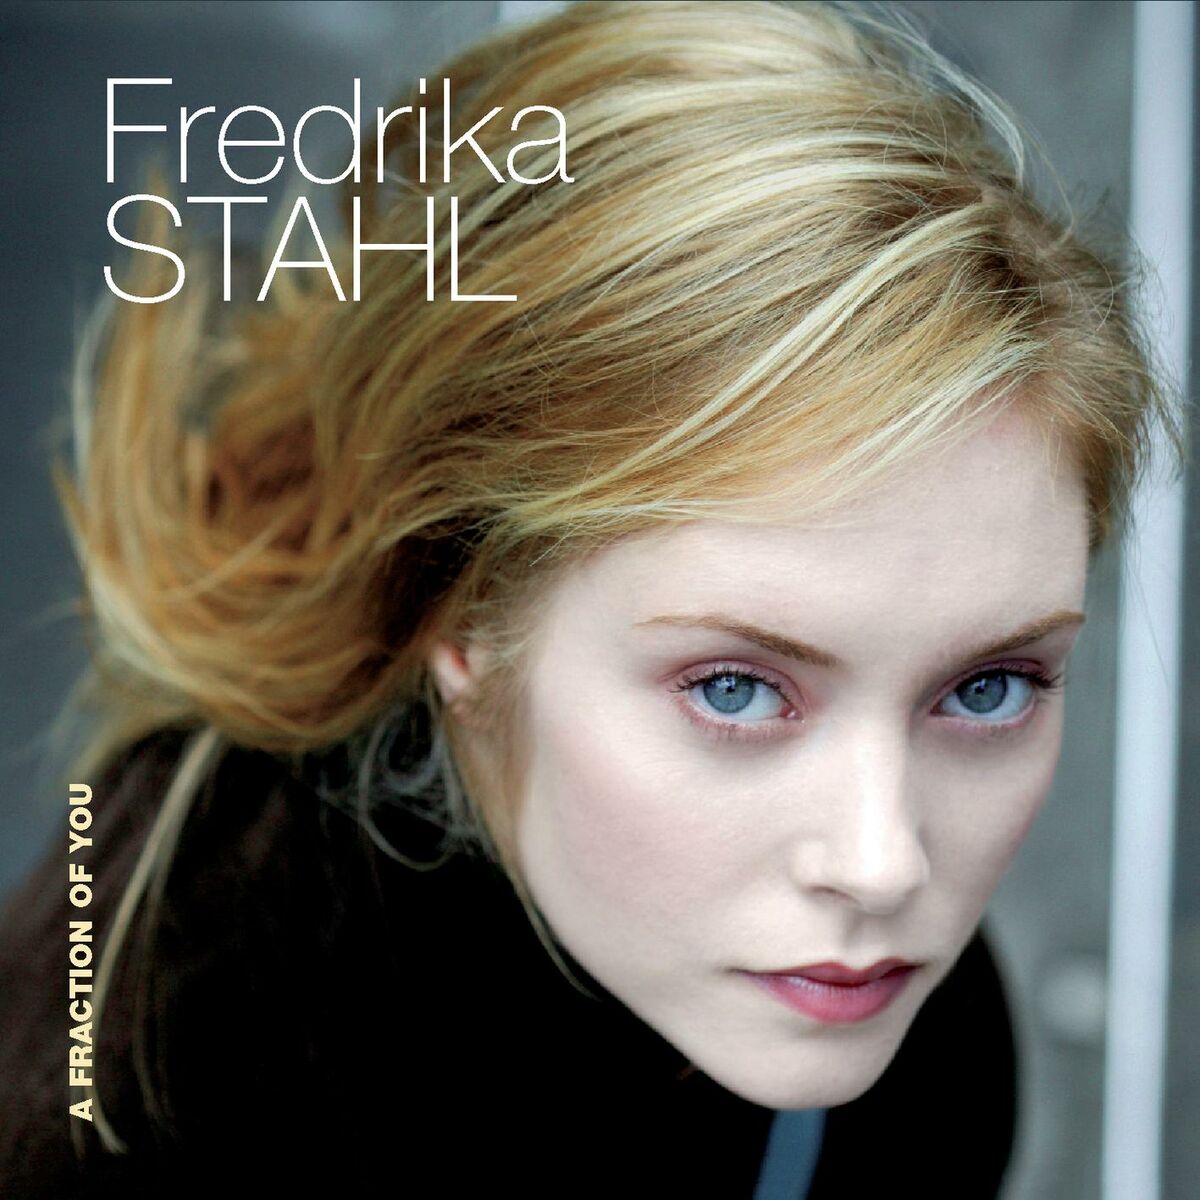 Musik von Fredrika Stahl: Alben